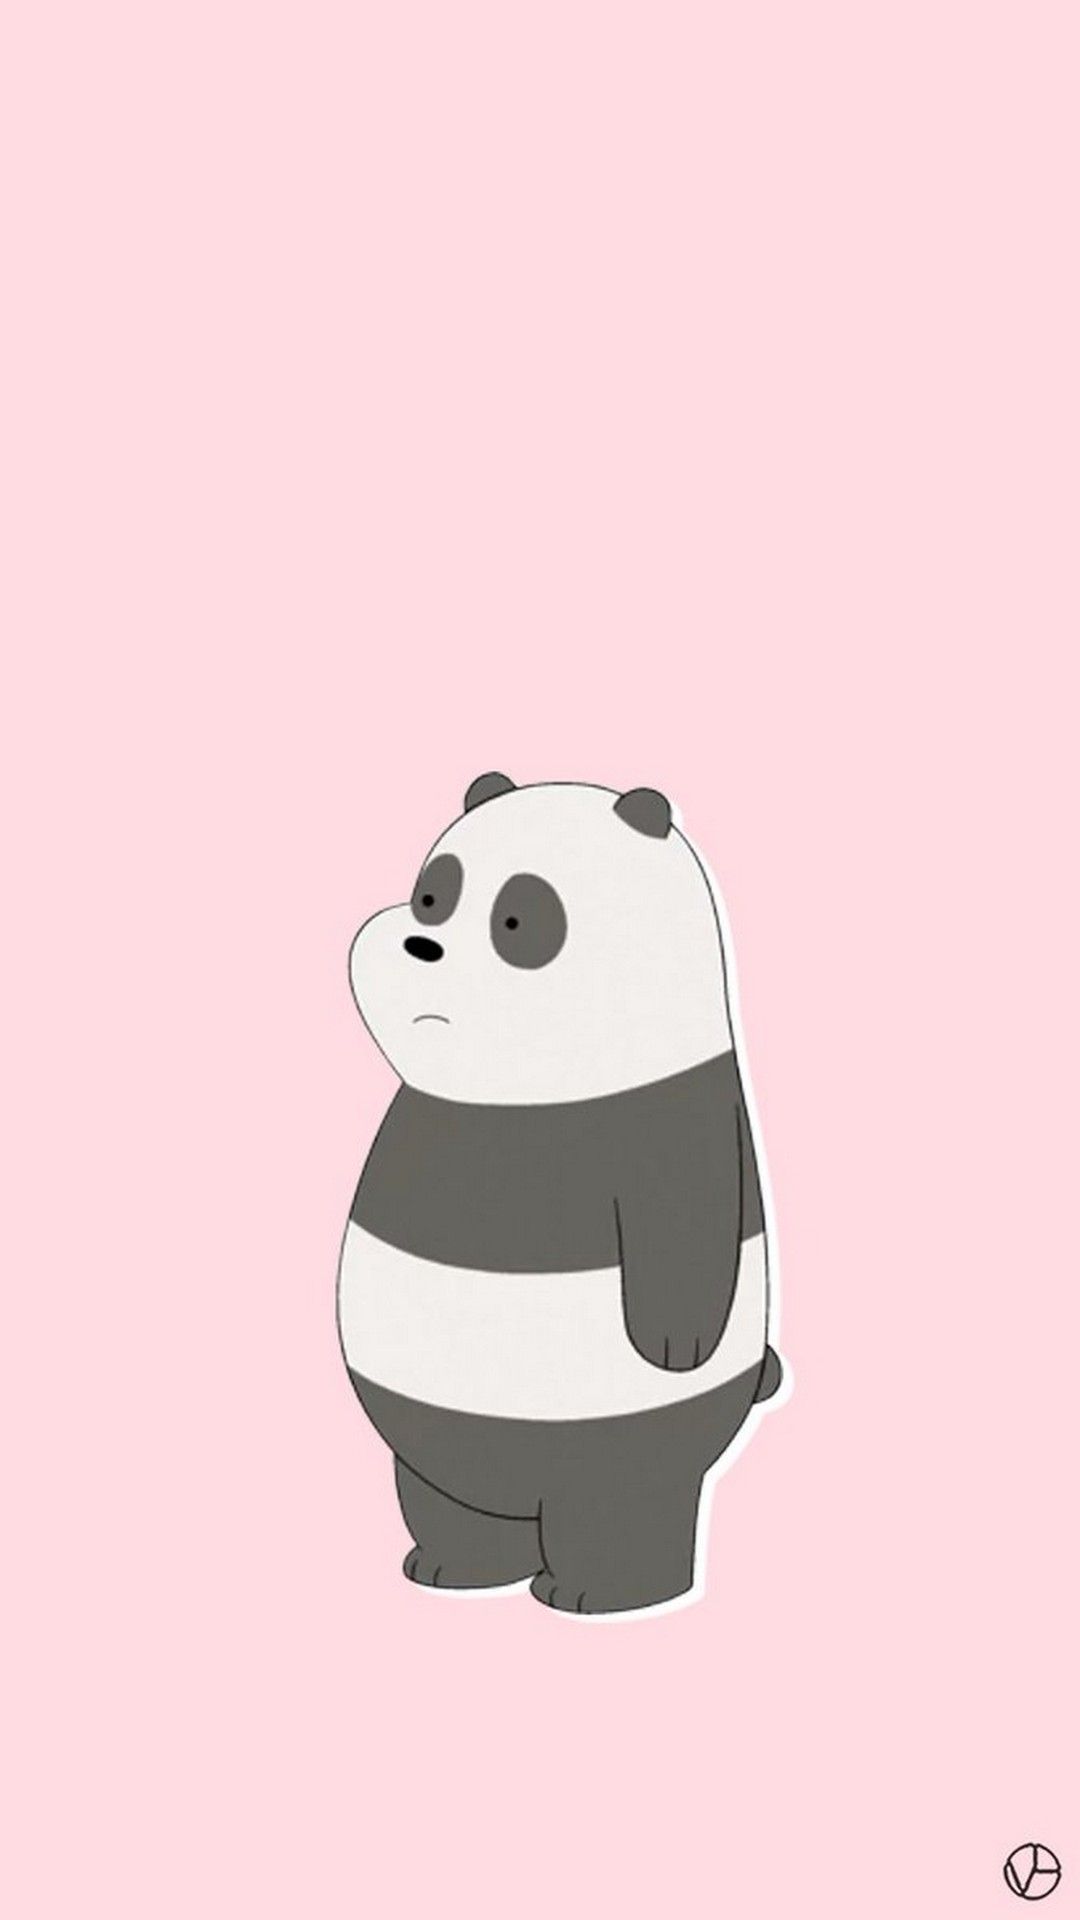 Cute Panda Wallpaper Mobile - Panda We Bare Bears Character - HD Wallpaper 